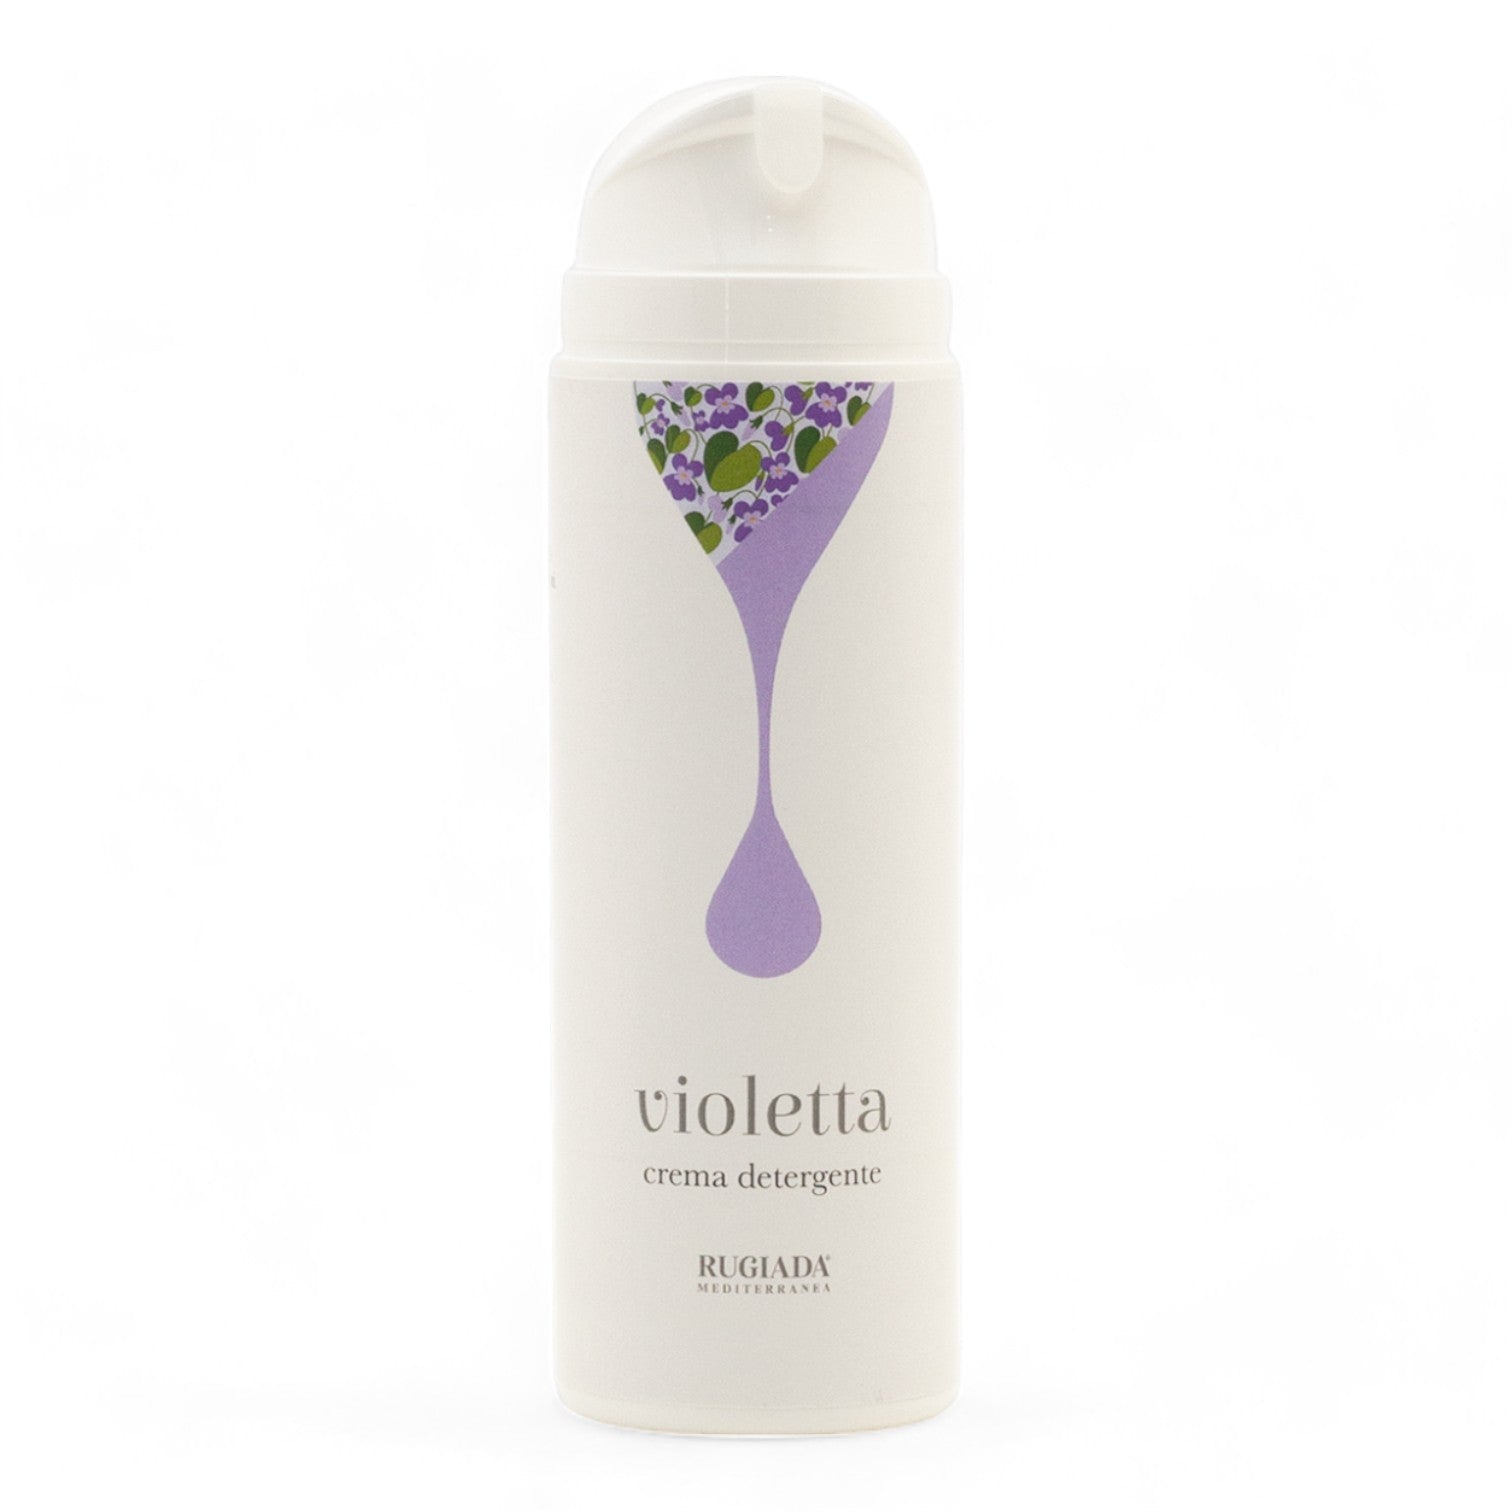 Violetta crema detergente 150 ml